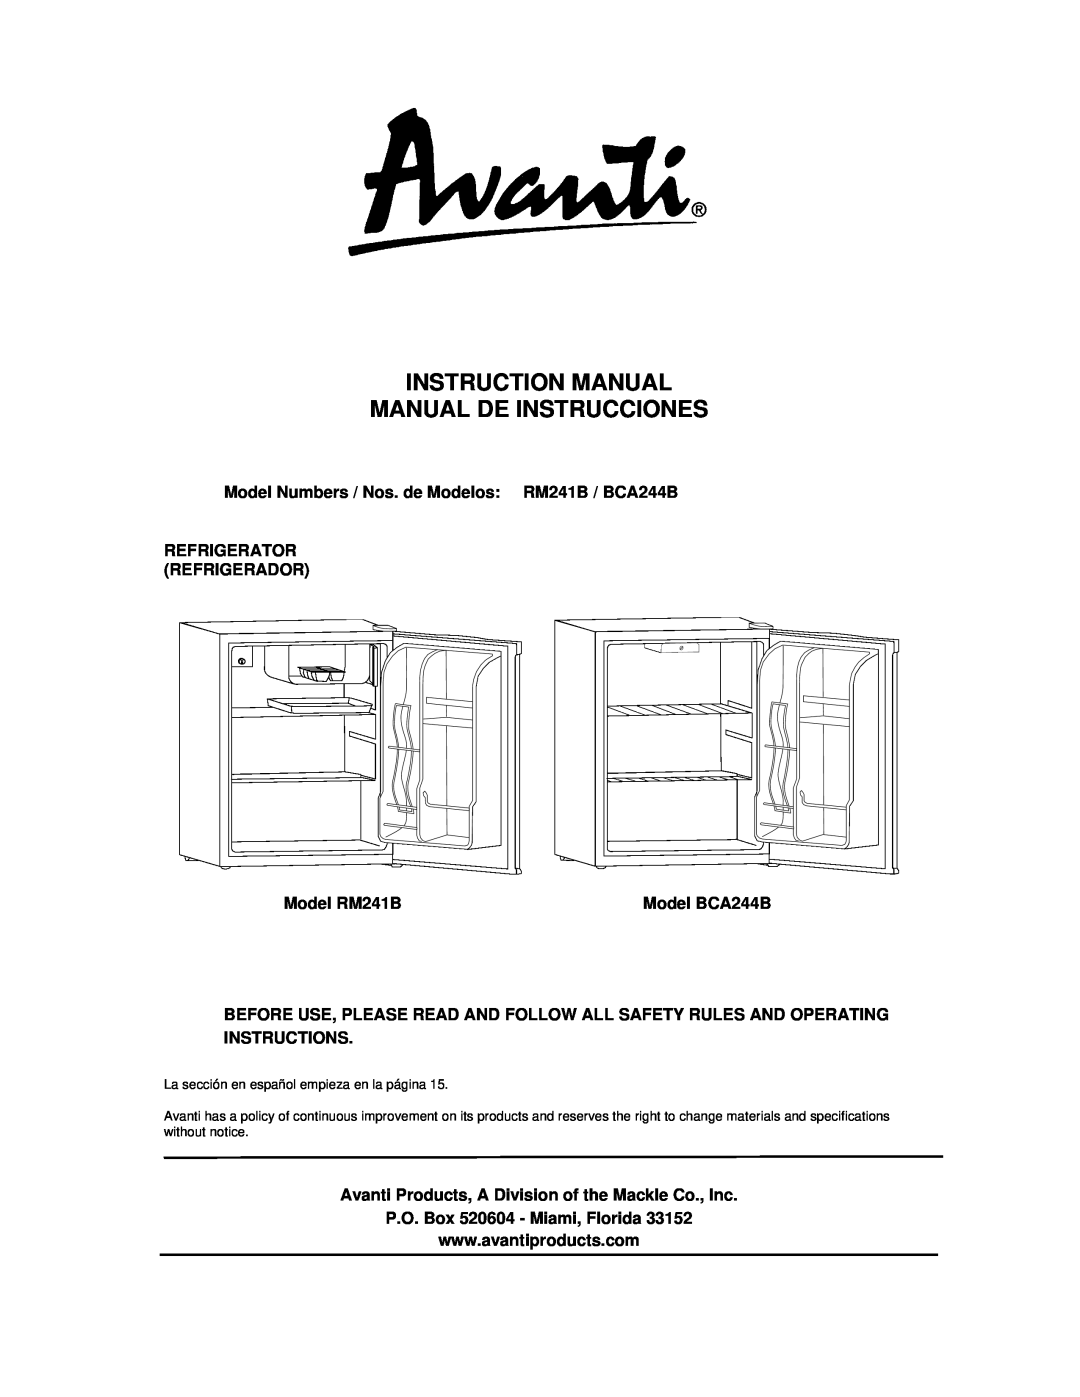 Avanti instruction manual Model Numbers / Nos. de Modelos RM241B / BCA244B, Refrigerator Refrigerador, Model RM241B 